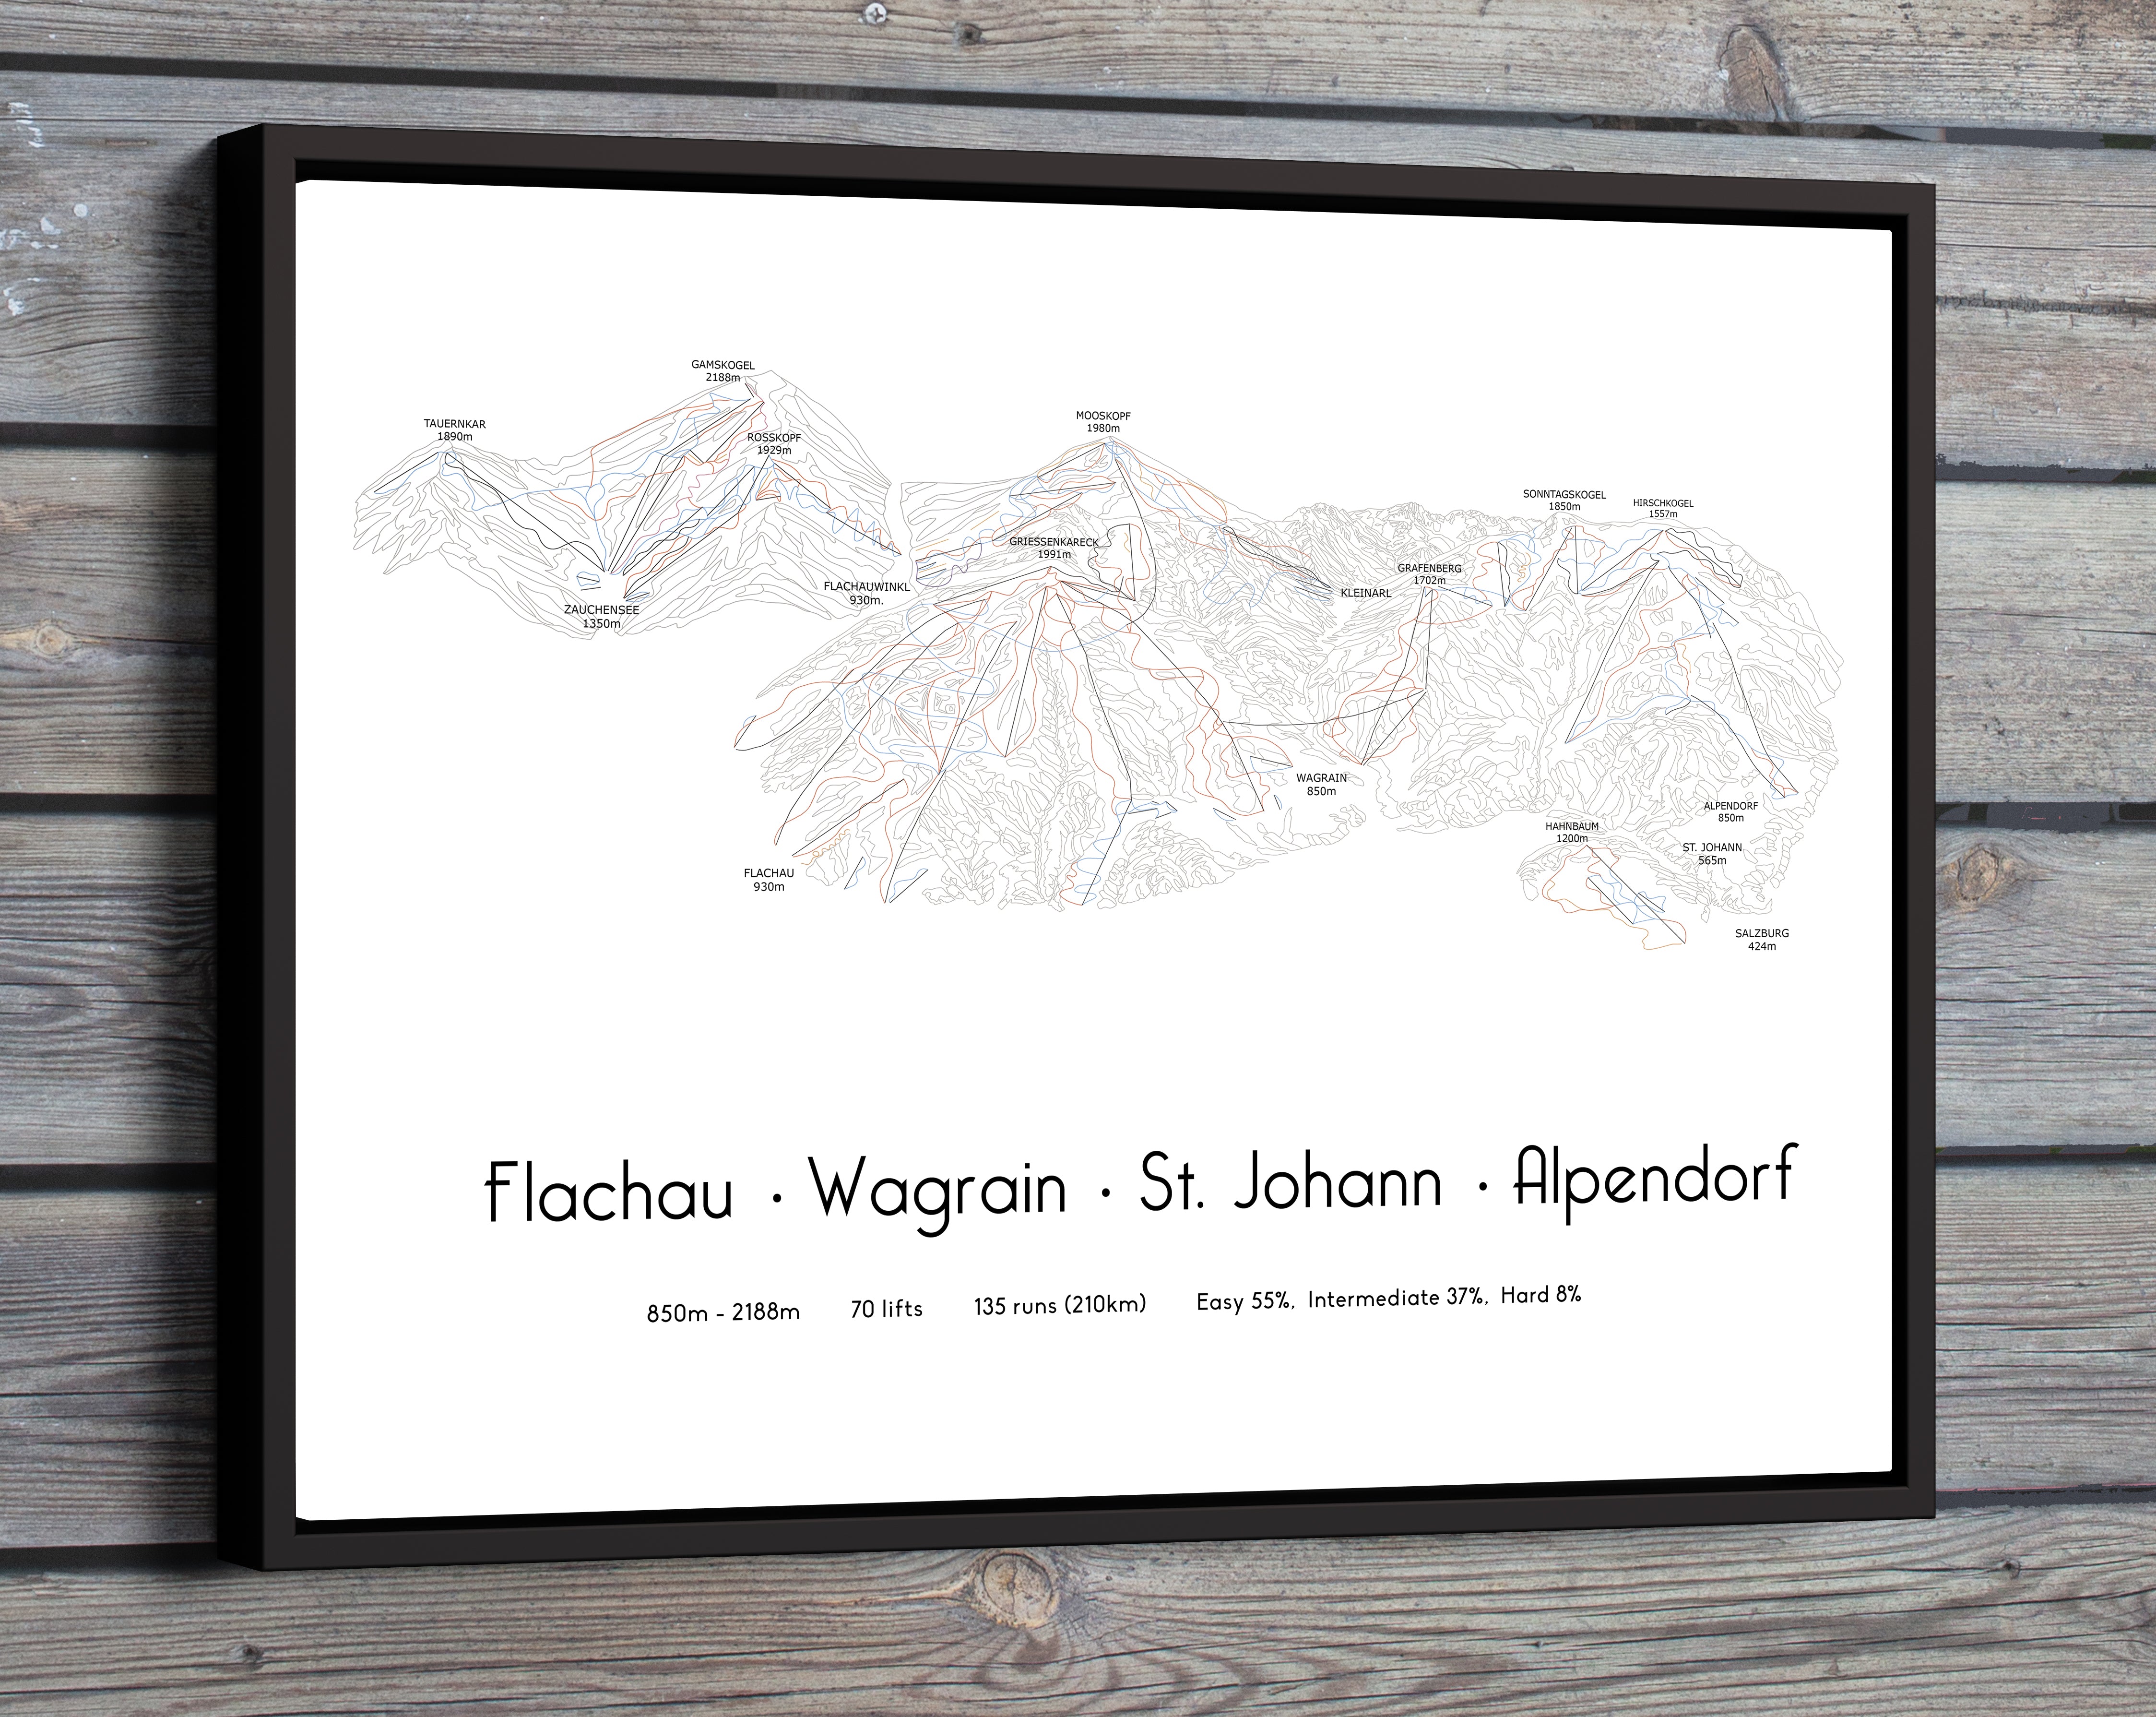 Flachau Wagrain St Johann Alpendorf